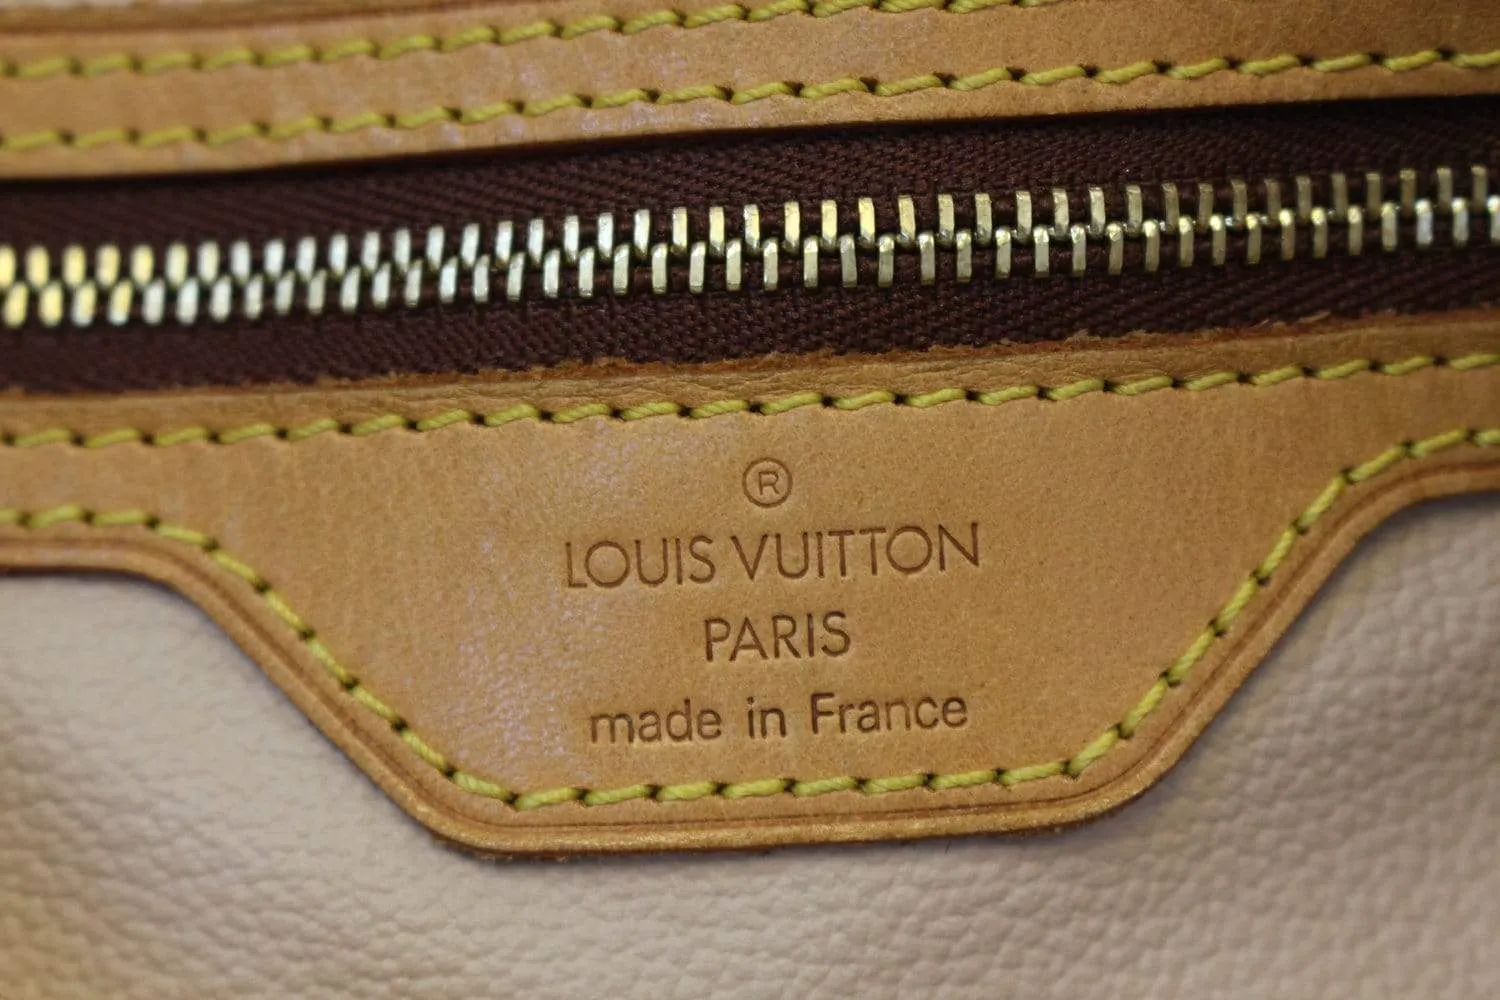 Ví Louis vuitton made in France chính hãng